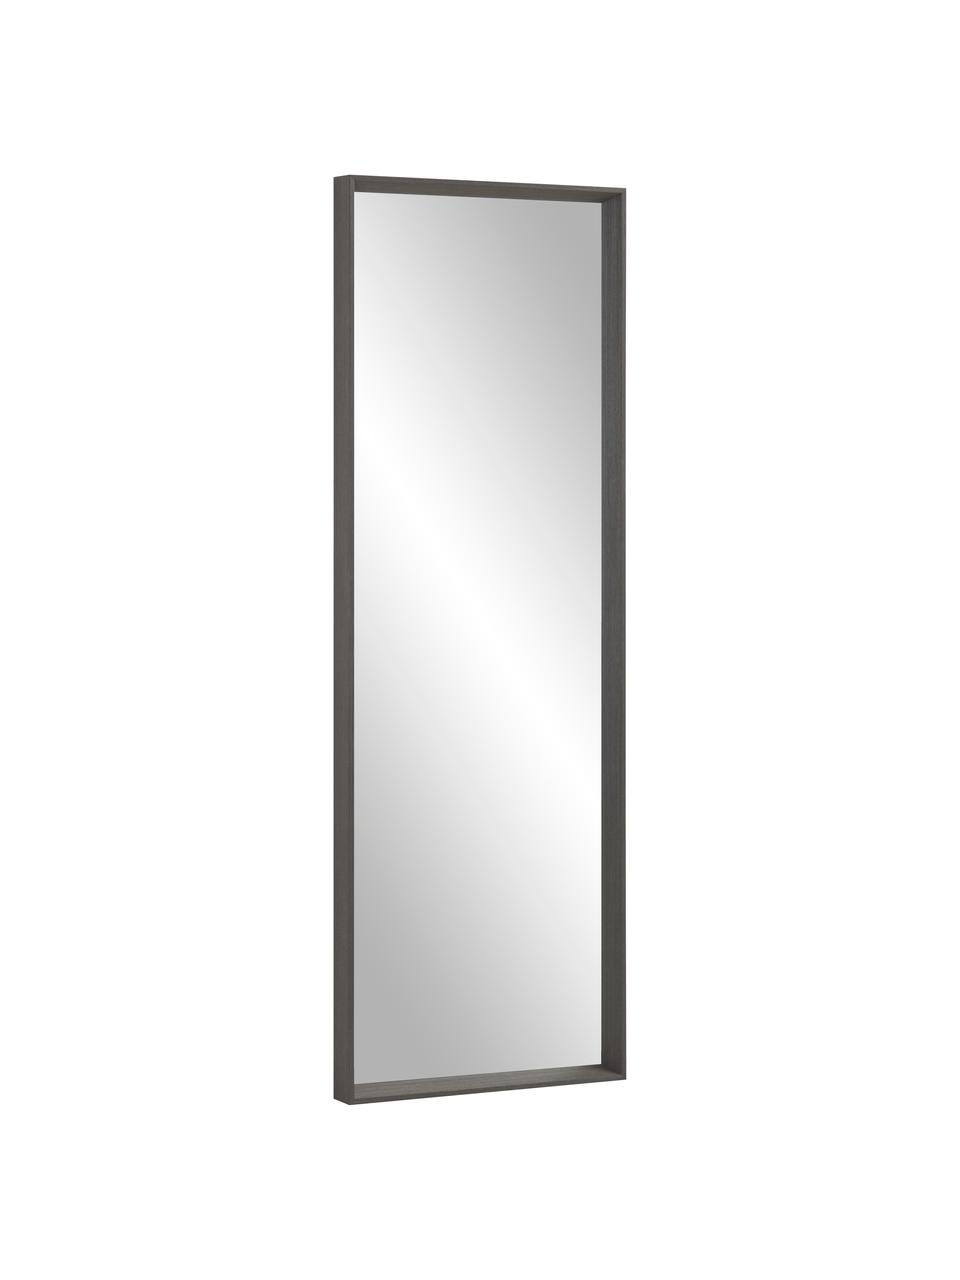 Obdélníkové nástěnné zrcadlo s dřevěným rámem Nerina, Hnědá, Š 52 cm, V 152 cm